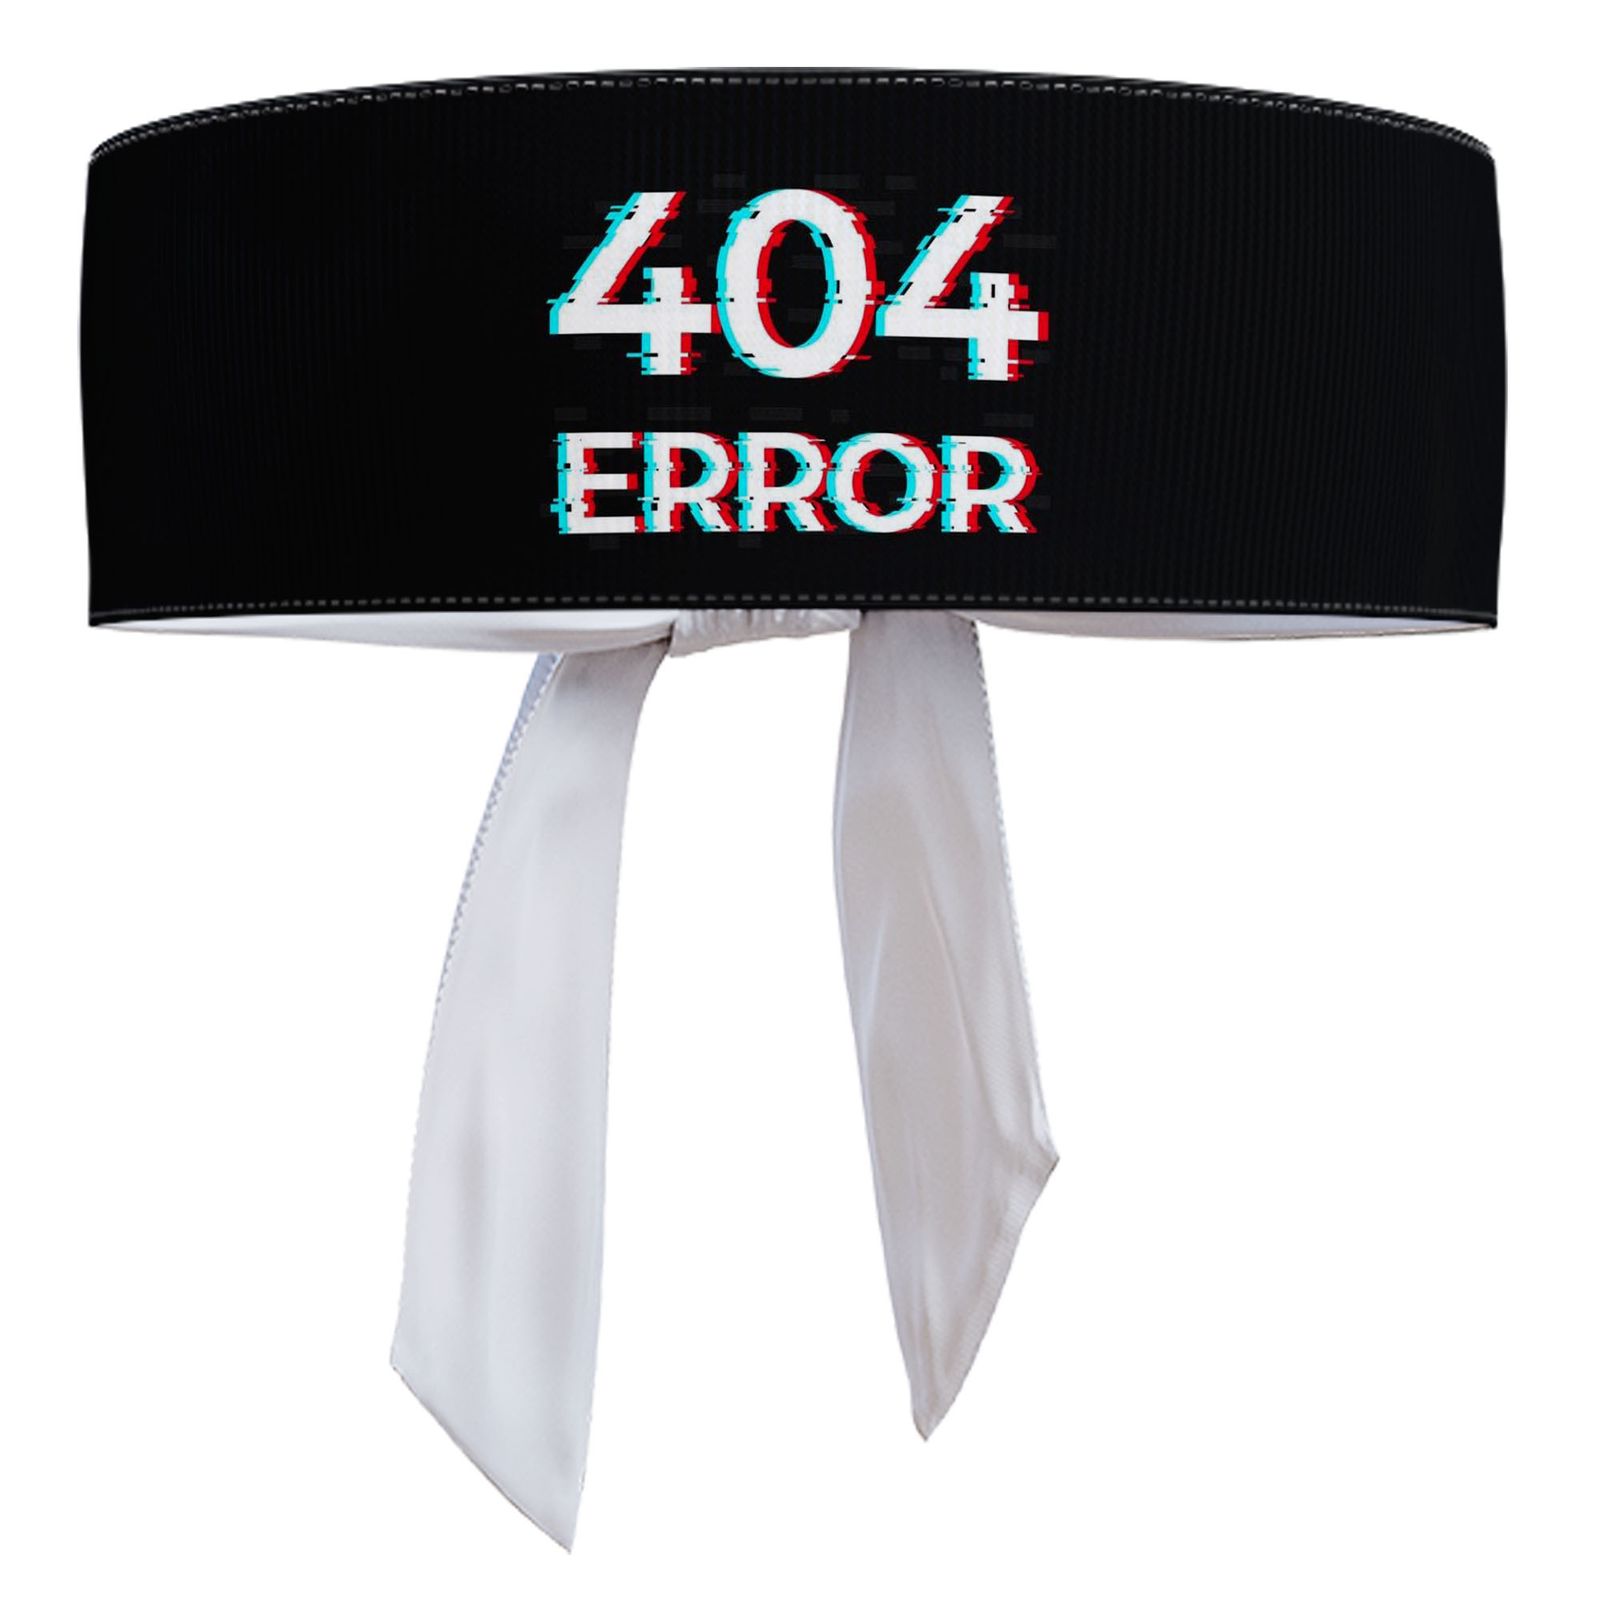 هدبند ورزشی آی تمر مدل error 404 کد 640 -  - 1